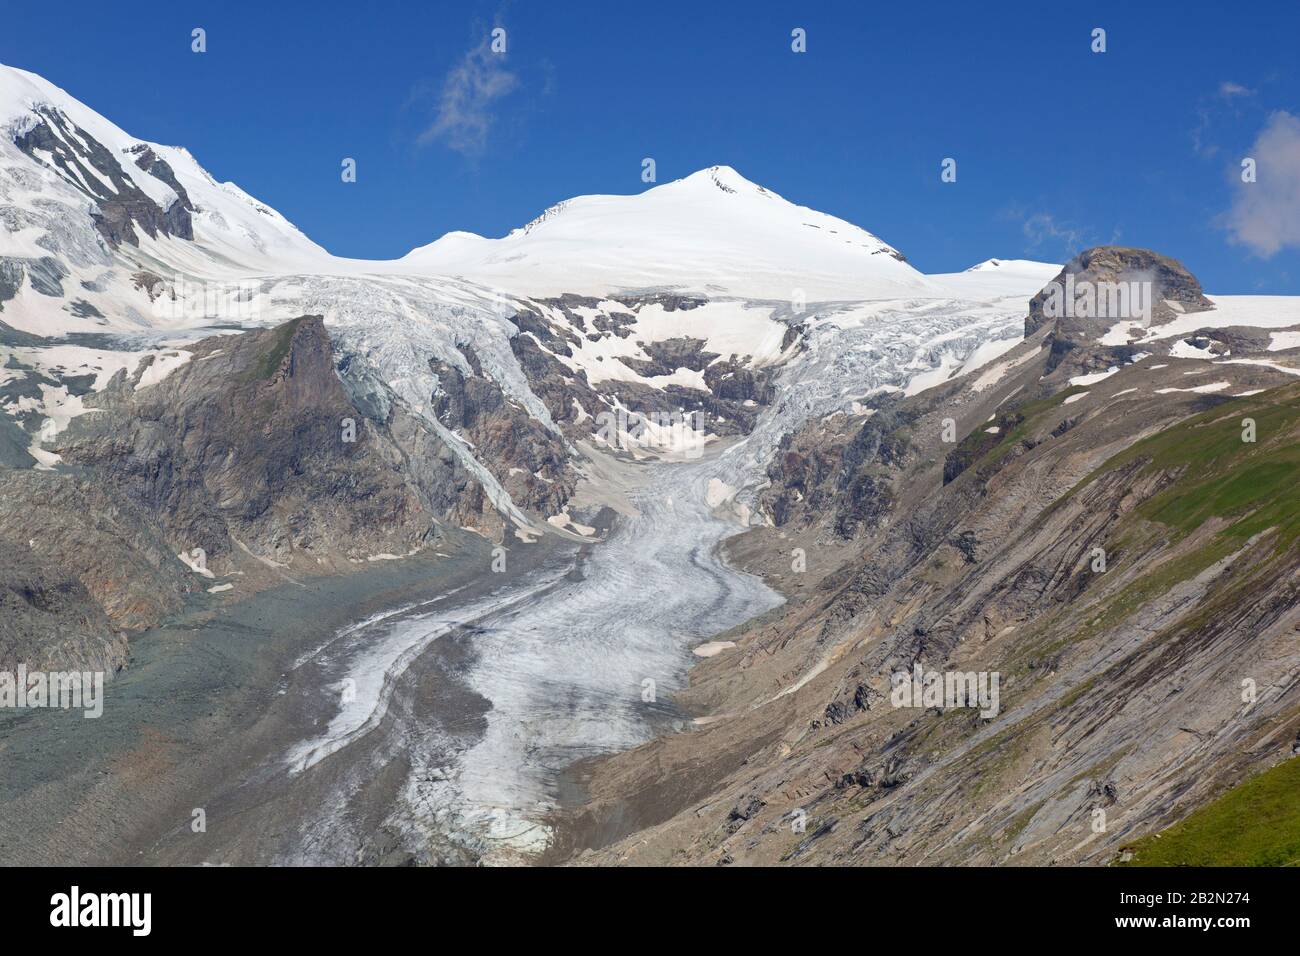 Vista aerea sul restringimento del Pasterze, il ghiacciaio più lungo in Austria e nelle Alpi Orientali e la vetta Johannisberg nel 2018, Hohe Tauern NP, Carinzia, Austria Foto Stock